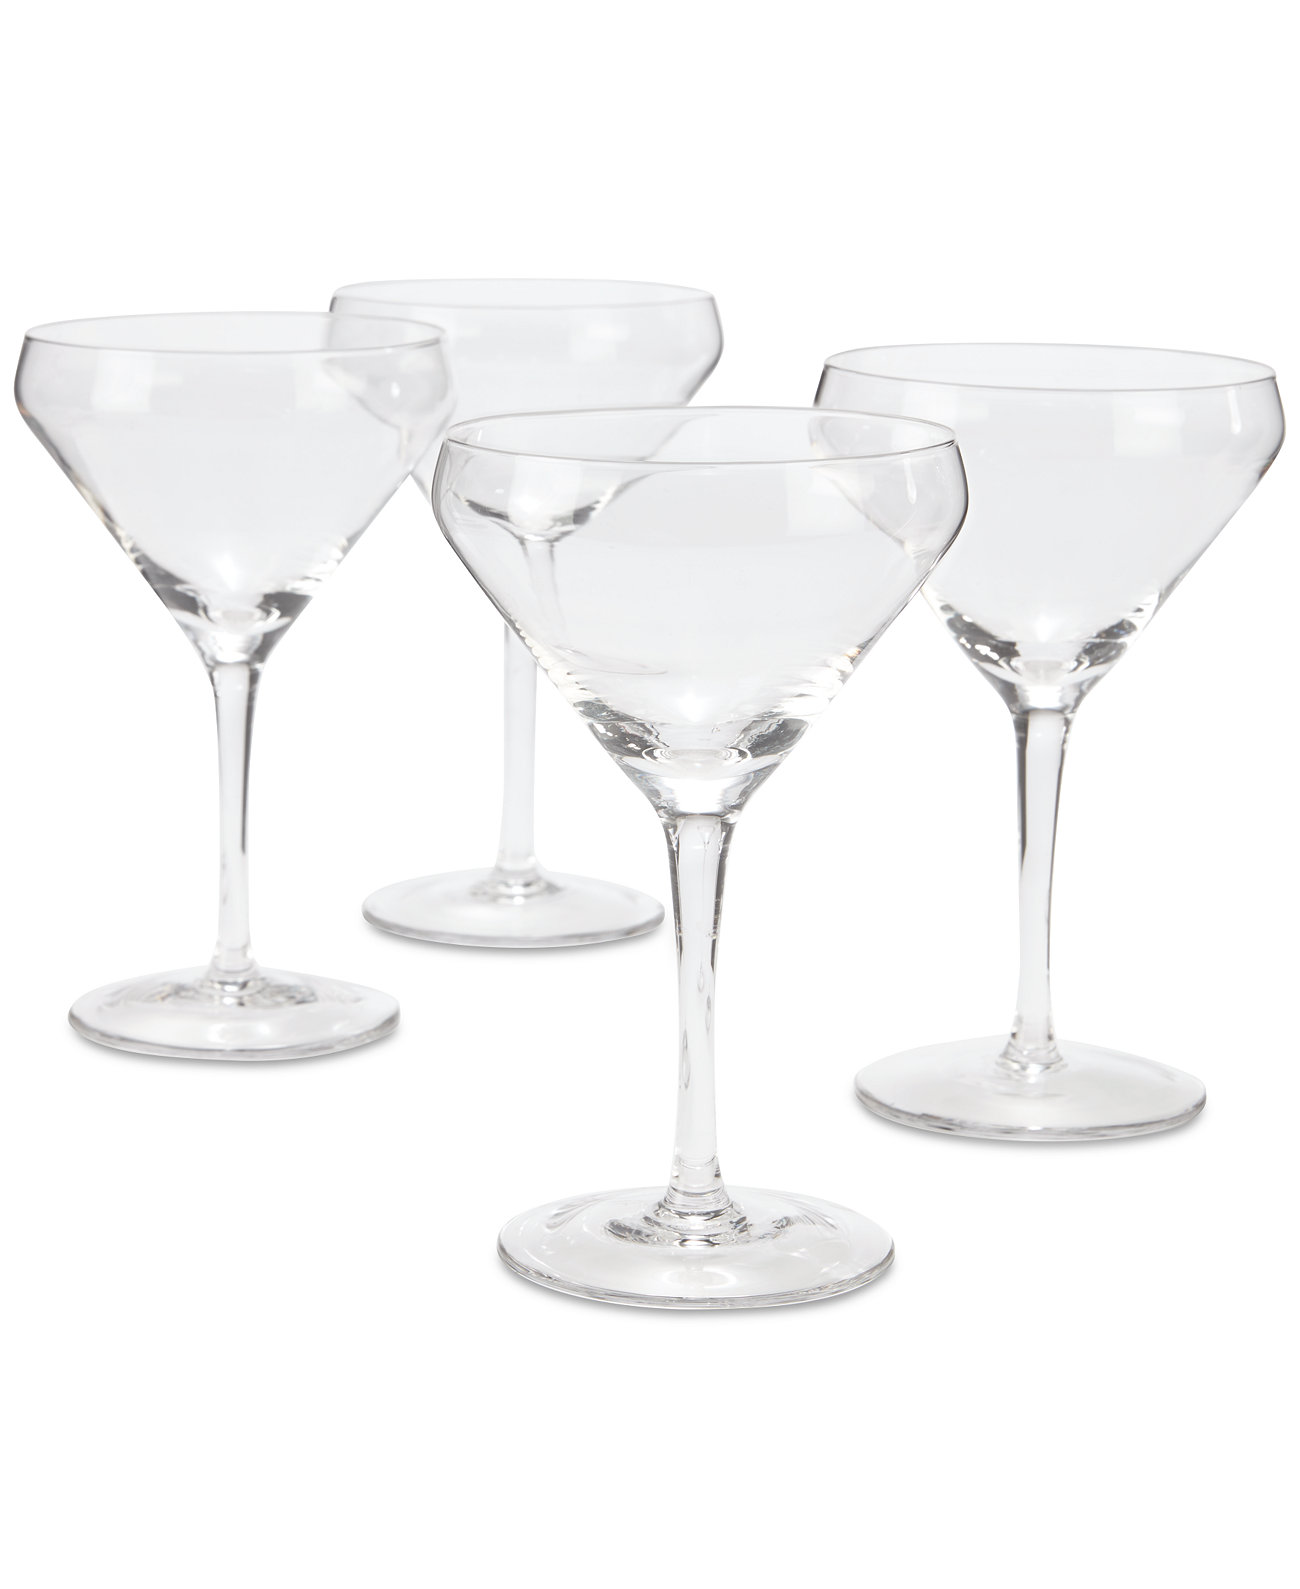 Прозрачные бокалы для мартини, набор из 4 штук, созданные для Macy's Hotel Collection